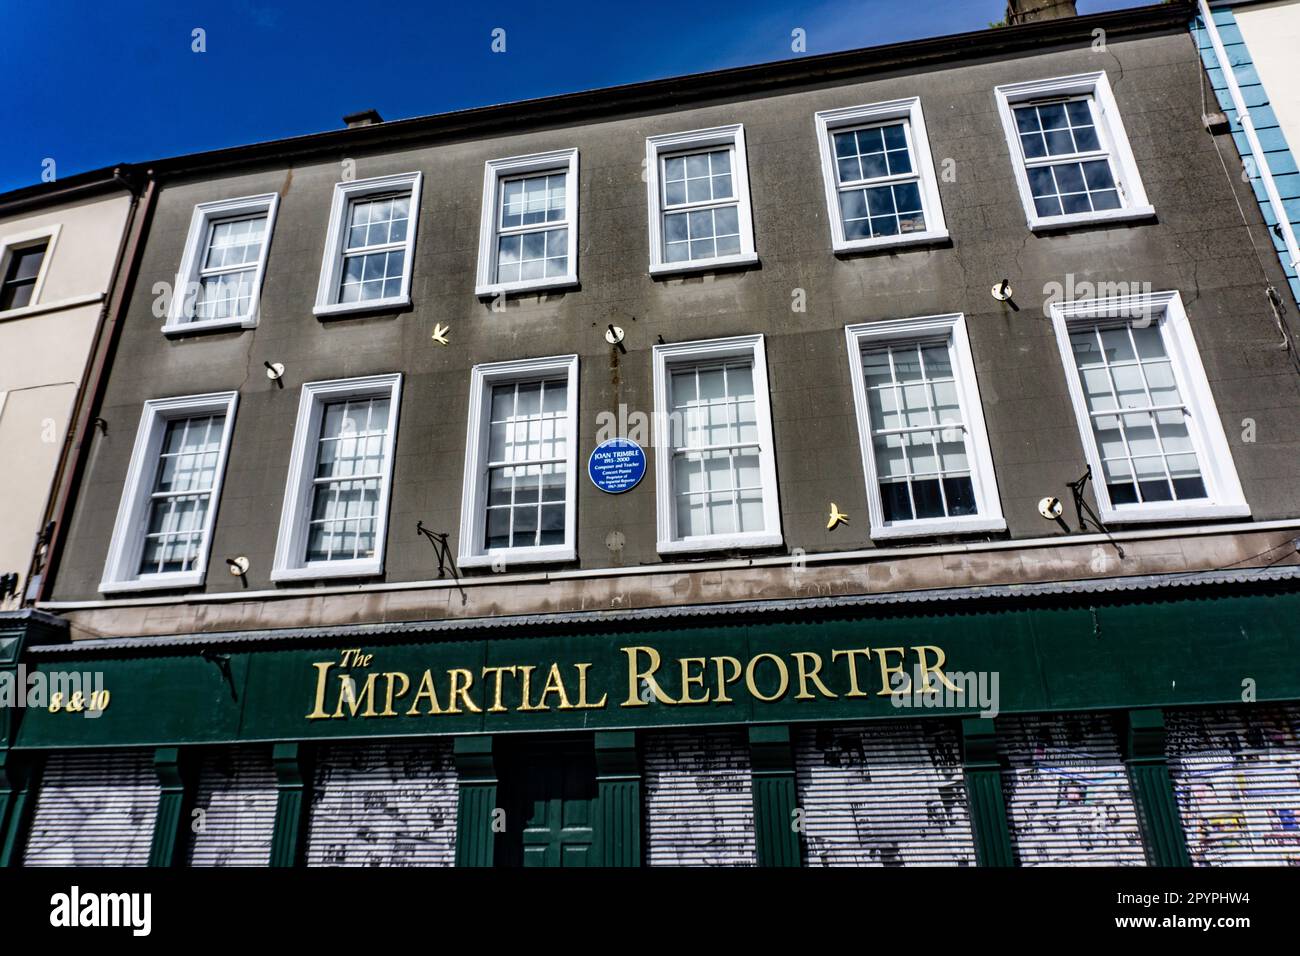 Las Oficinas del Reportero Imparcial, fundado en 1825, es el 3rd periódico más antiguo de Irlanda. La placa hace referencia a Joan Trimble, antiguo propietario. Foto de stock